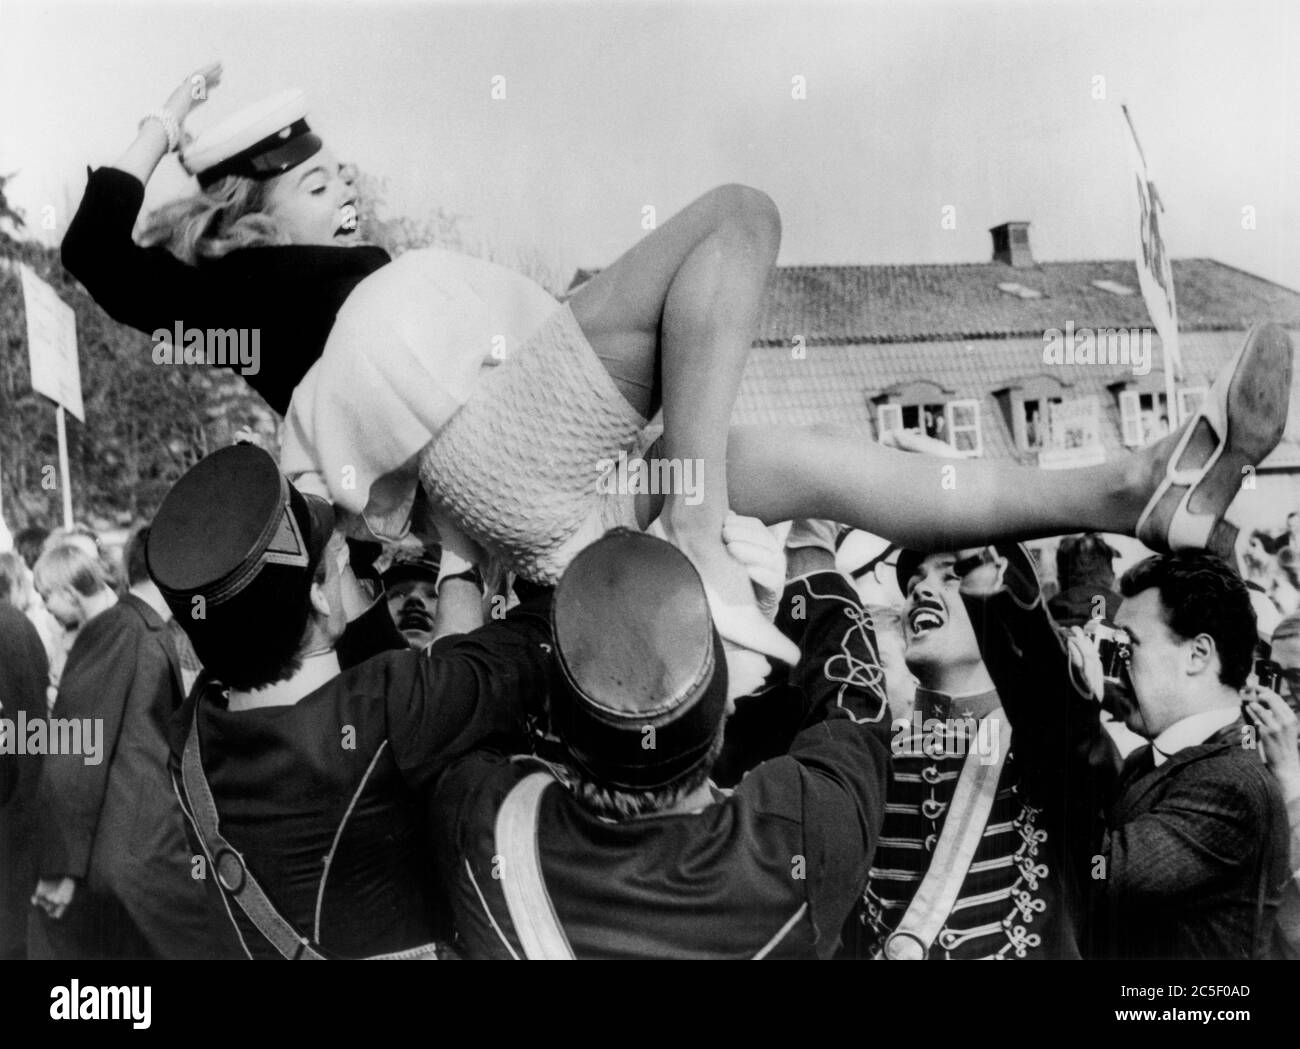 Schauspielerin Pia Degermark wird während der Abschlussfeier im Exklusiven Sigtunaskolan, Schweden, UPI, 12. Juni 1968 in die Luft gehoben Stockfoto